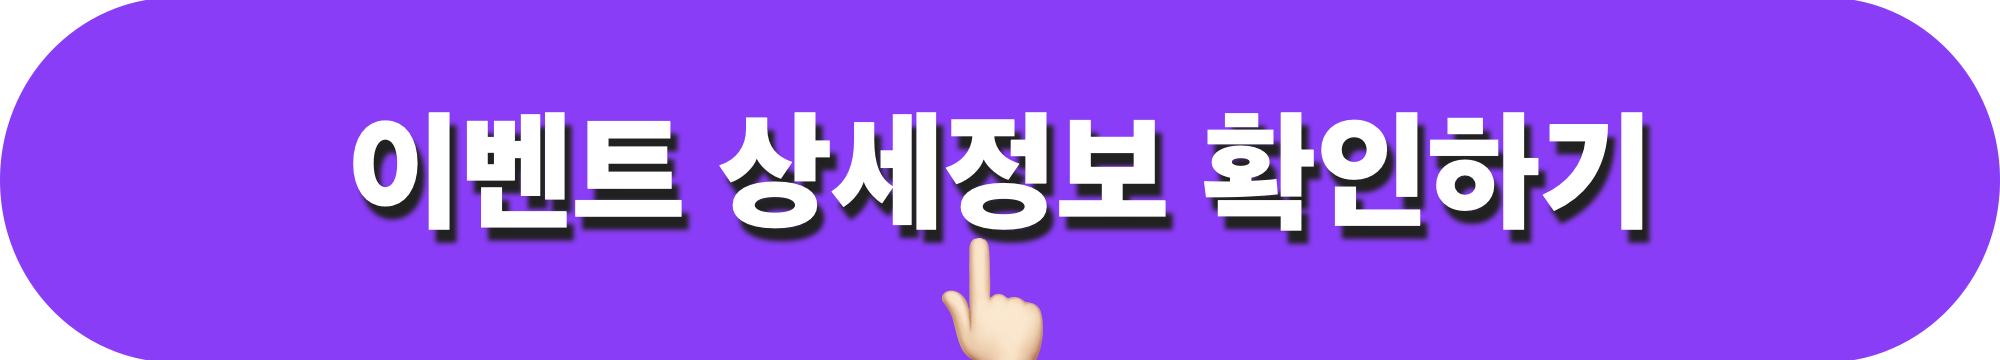 대한민국밤밤곡곡100_이벤트_상세정보_확인하기